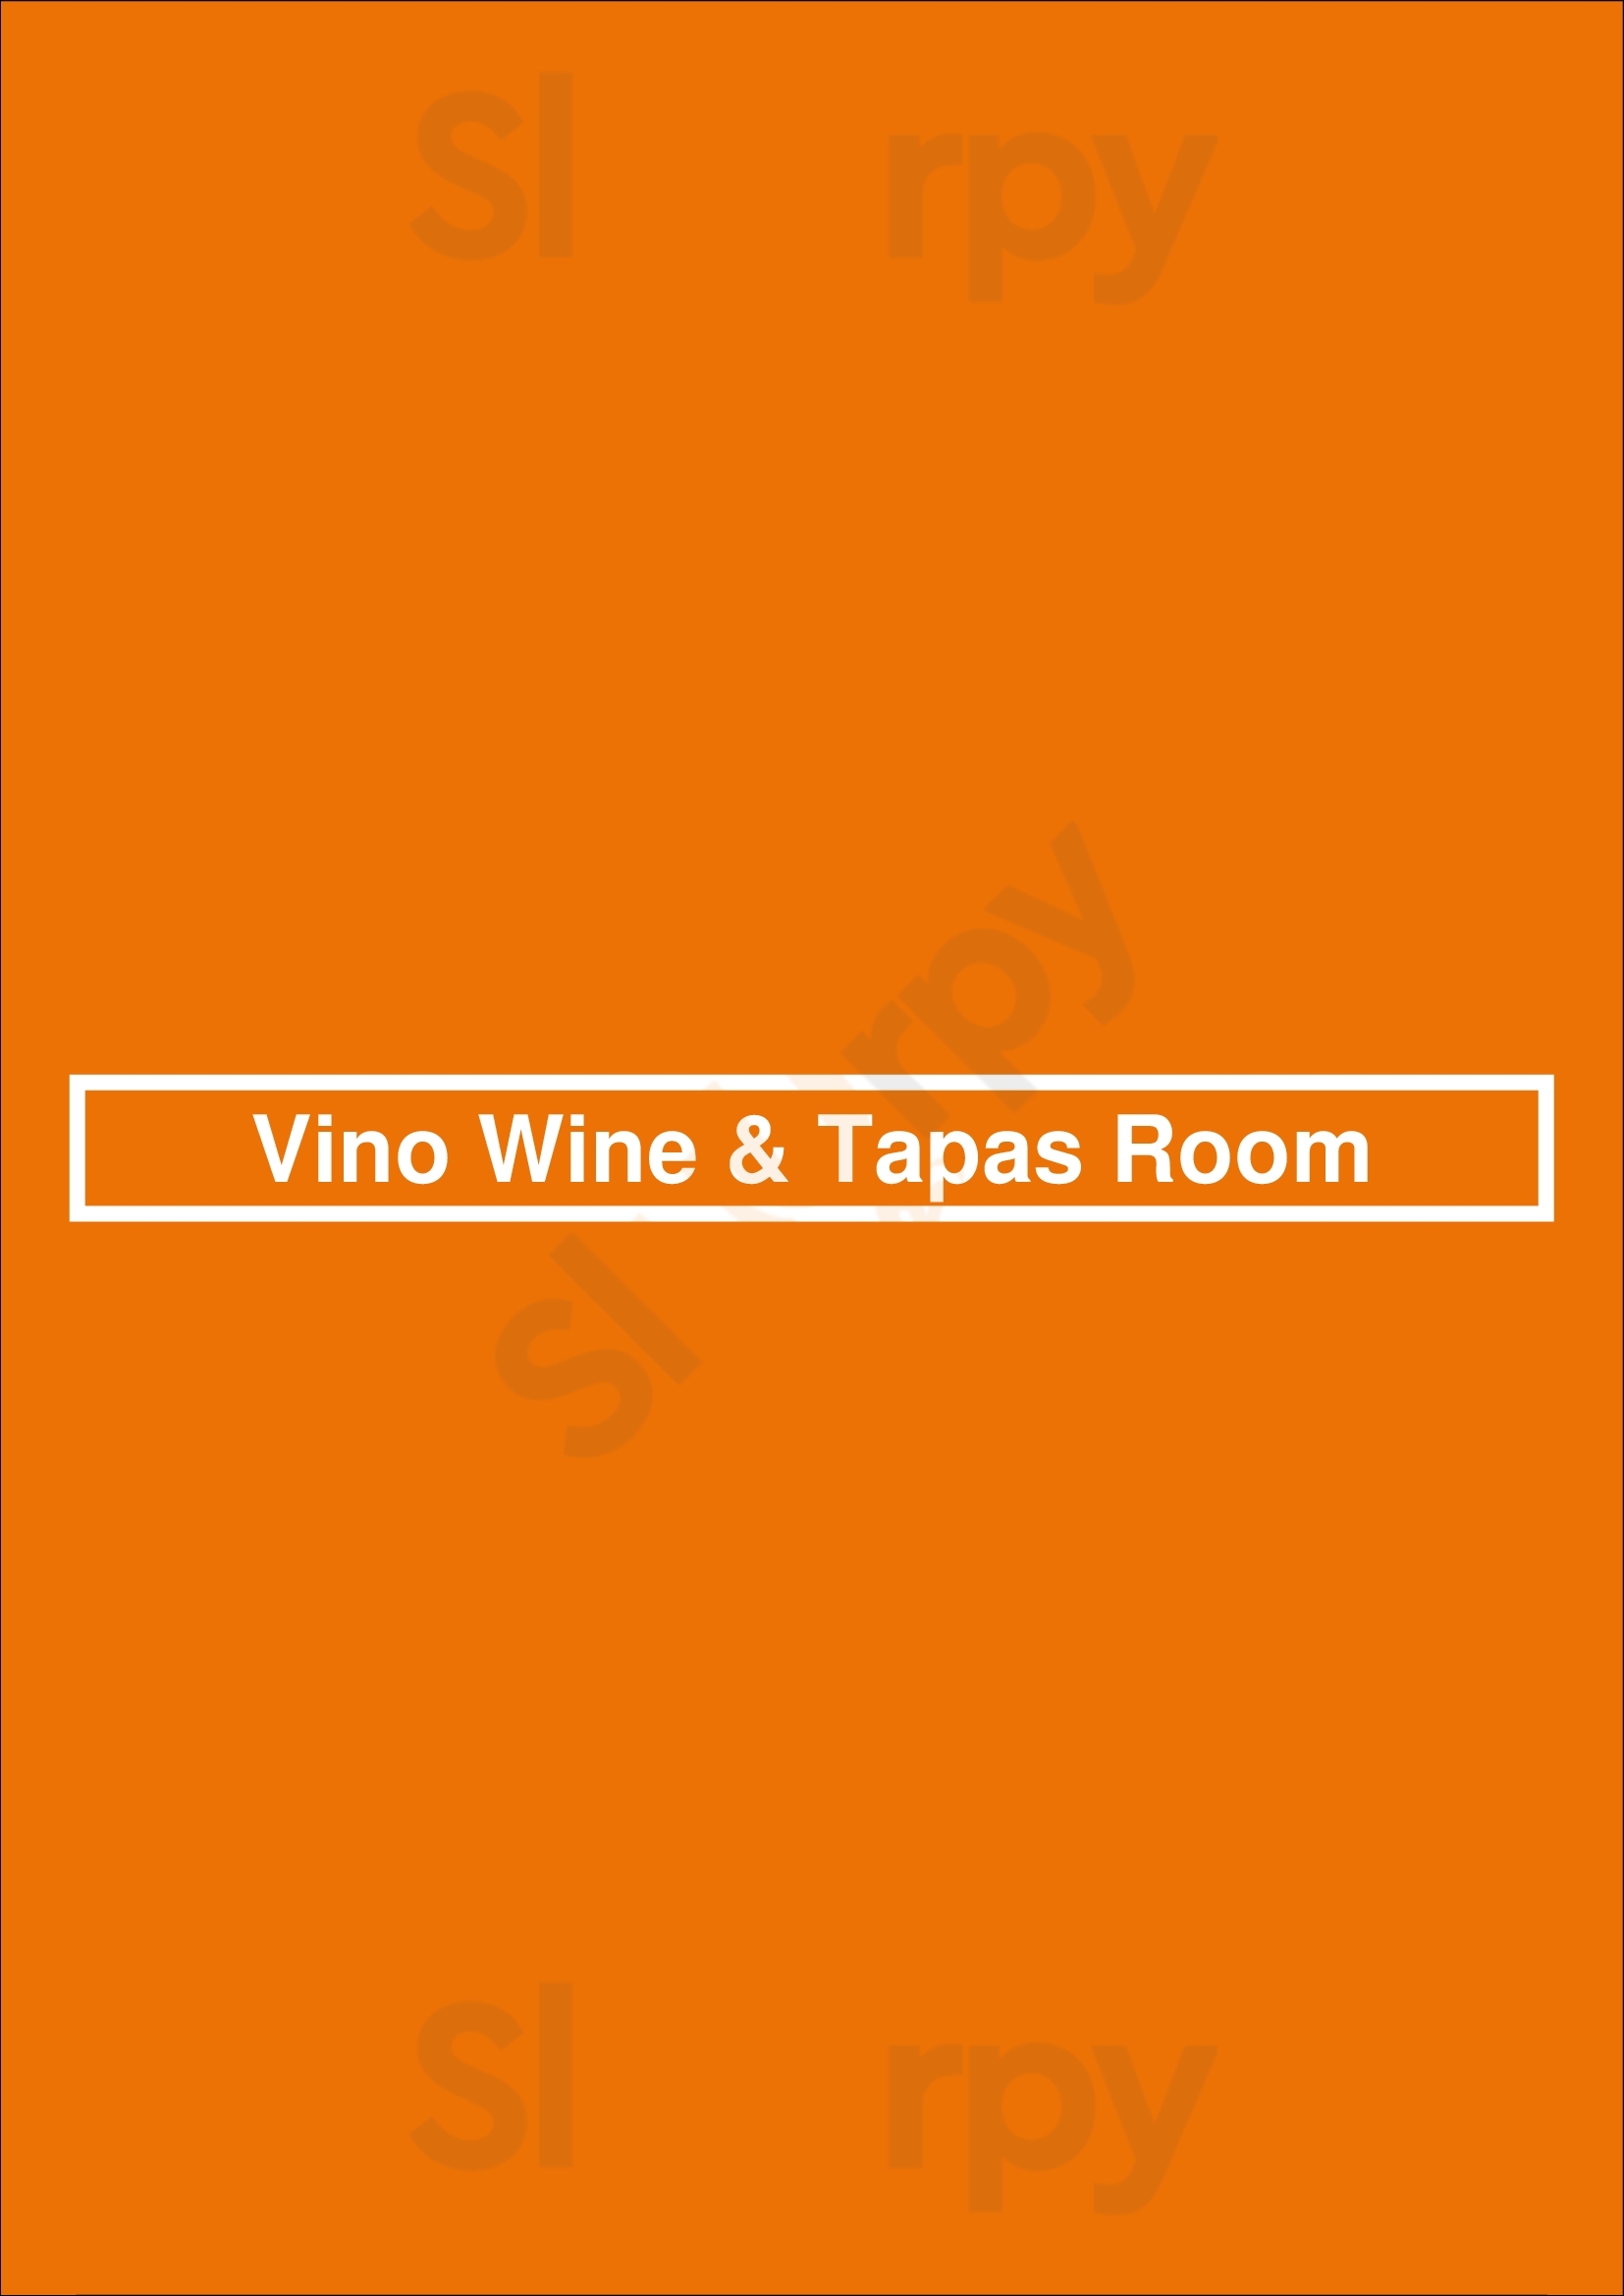 Vino Wine & Tapas Room Los Angeles Menu - 1